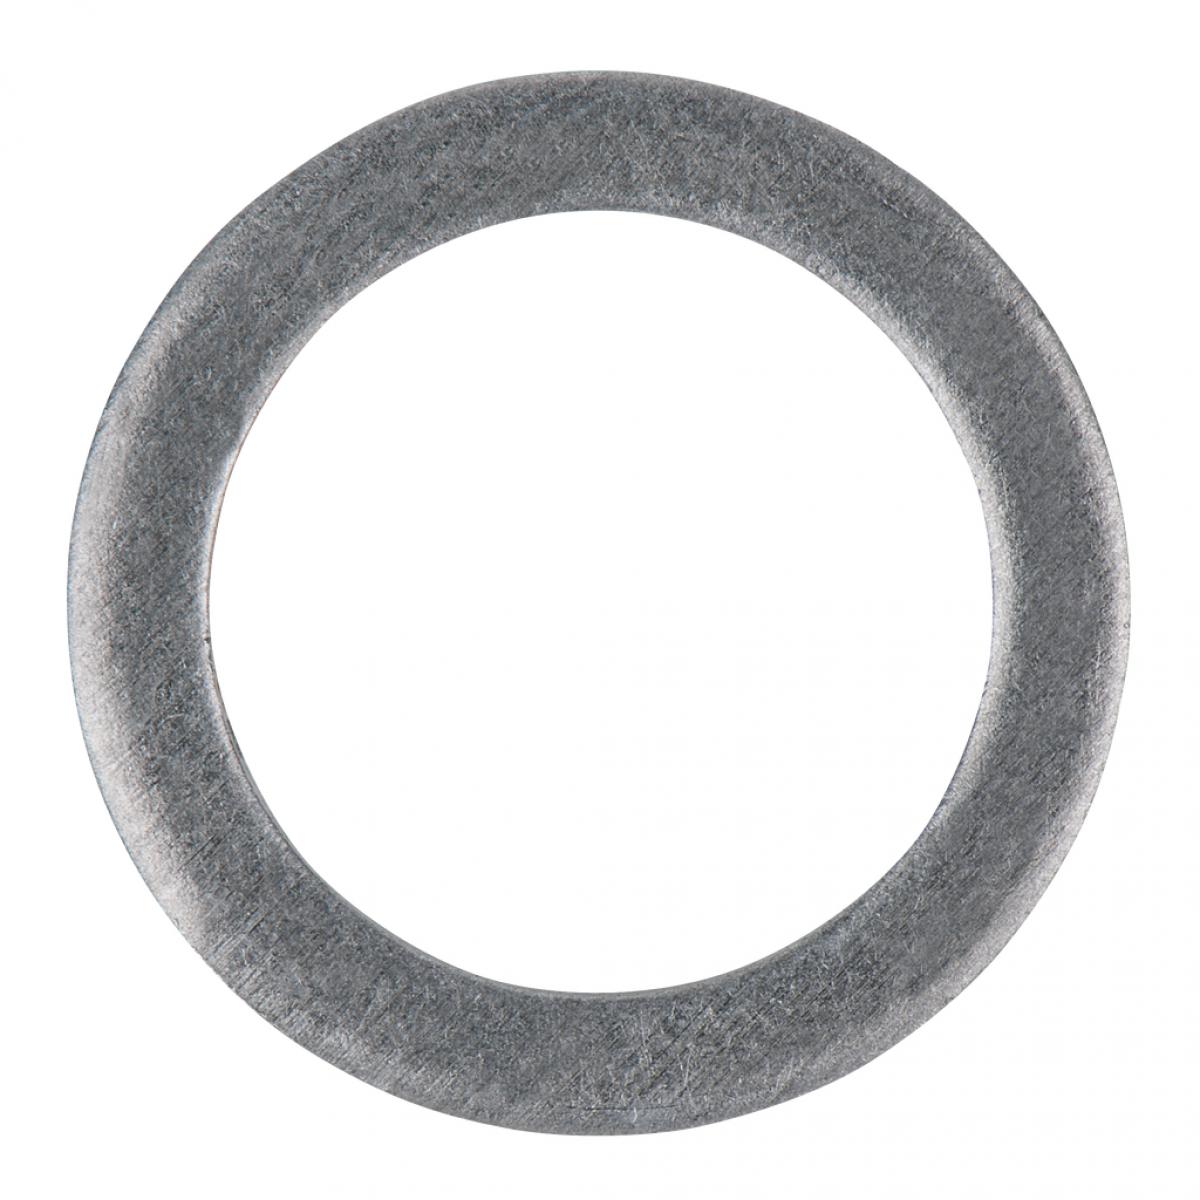 Каталог уплотнительных колец. Алюминиевое кольцо. Кольцо алюминиевое 16 мм. Алюминиевое кольцо для отопления. Декоративное алюминиевое кольцо 50 мм.